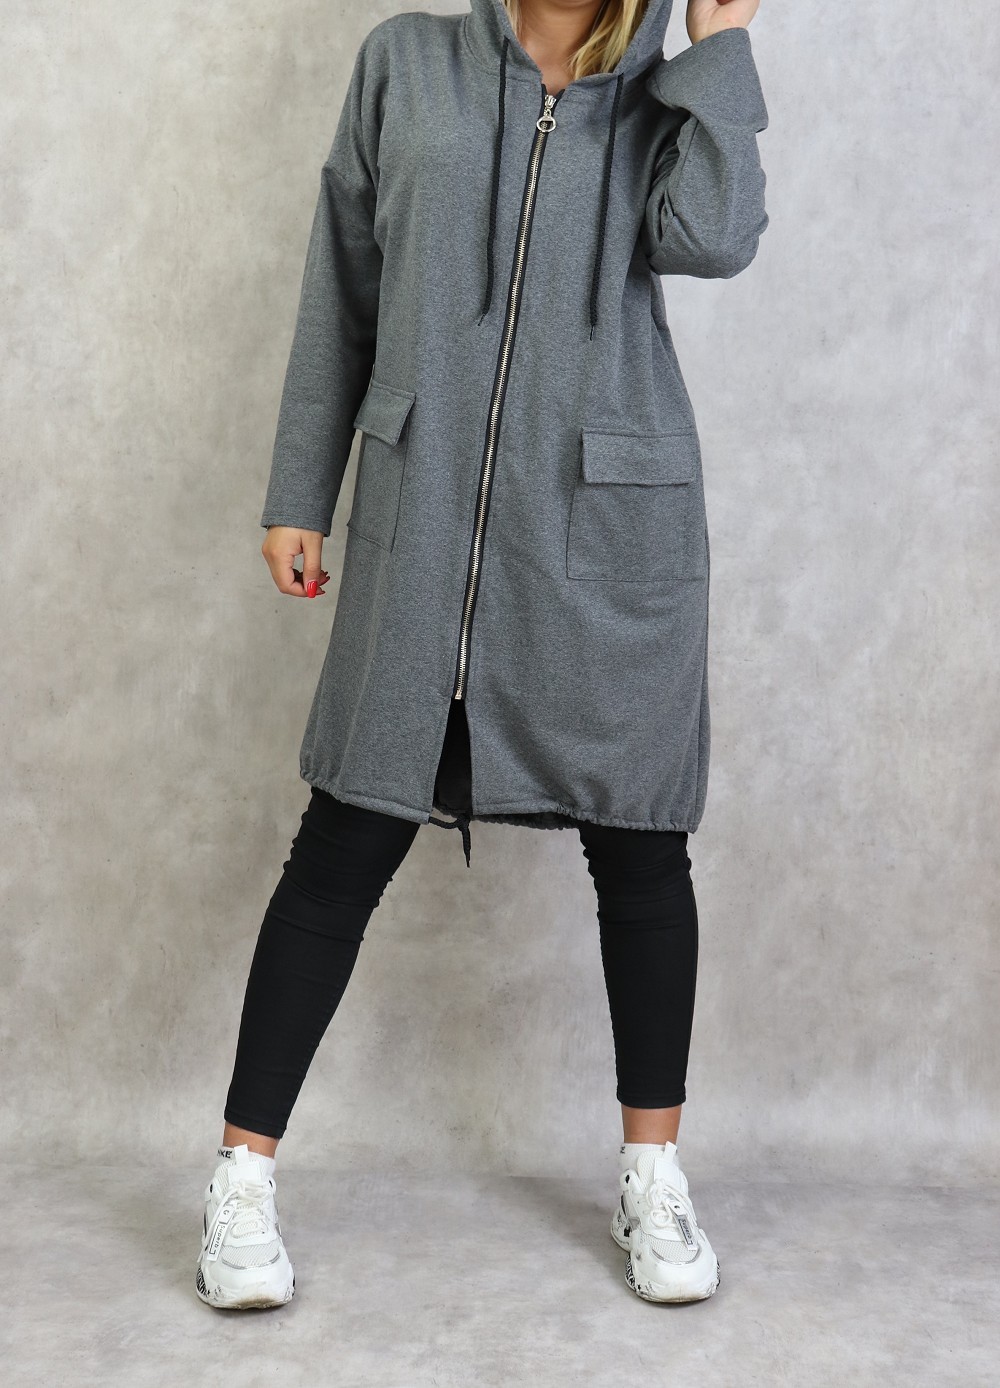 Sweat long zippé style sportswear pour femme - Couleur gris chiné